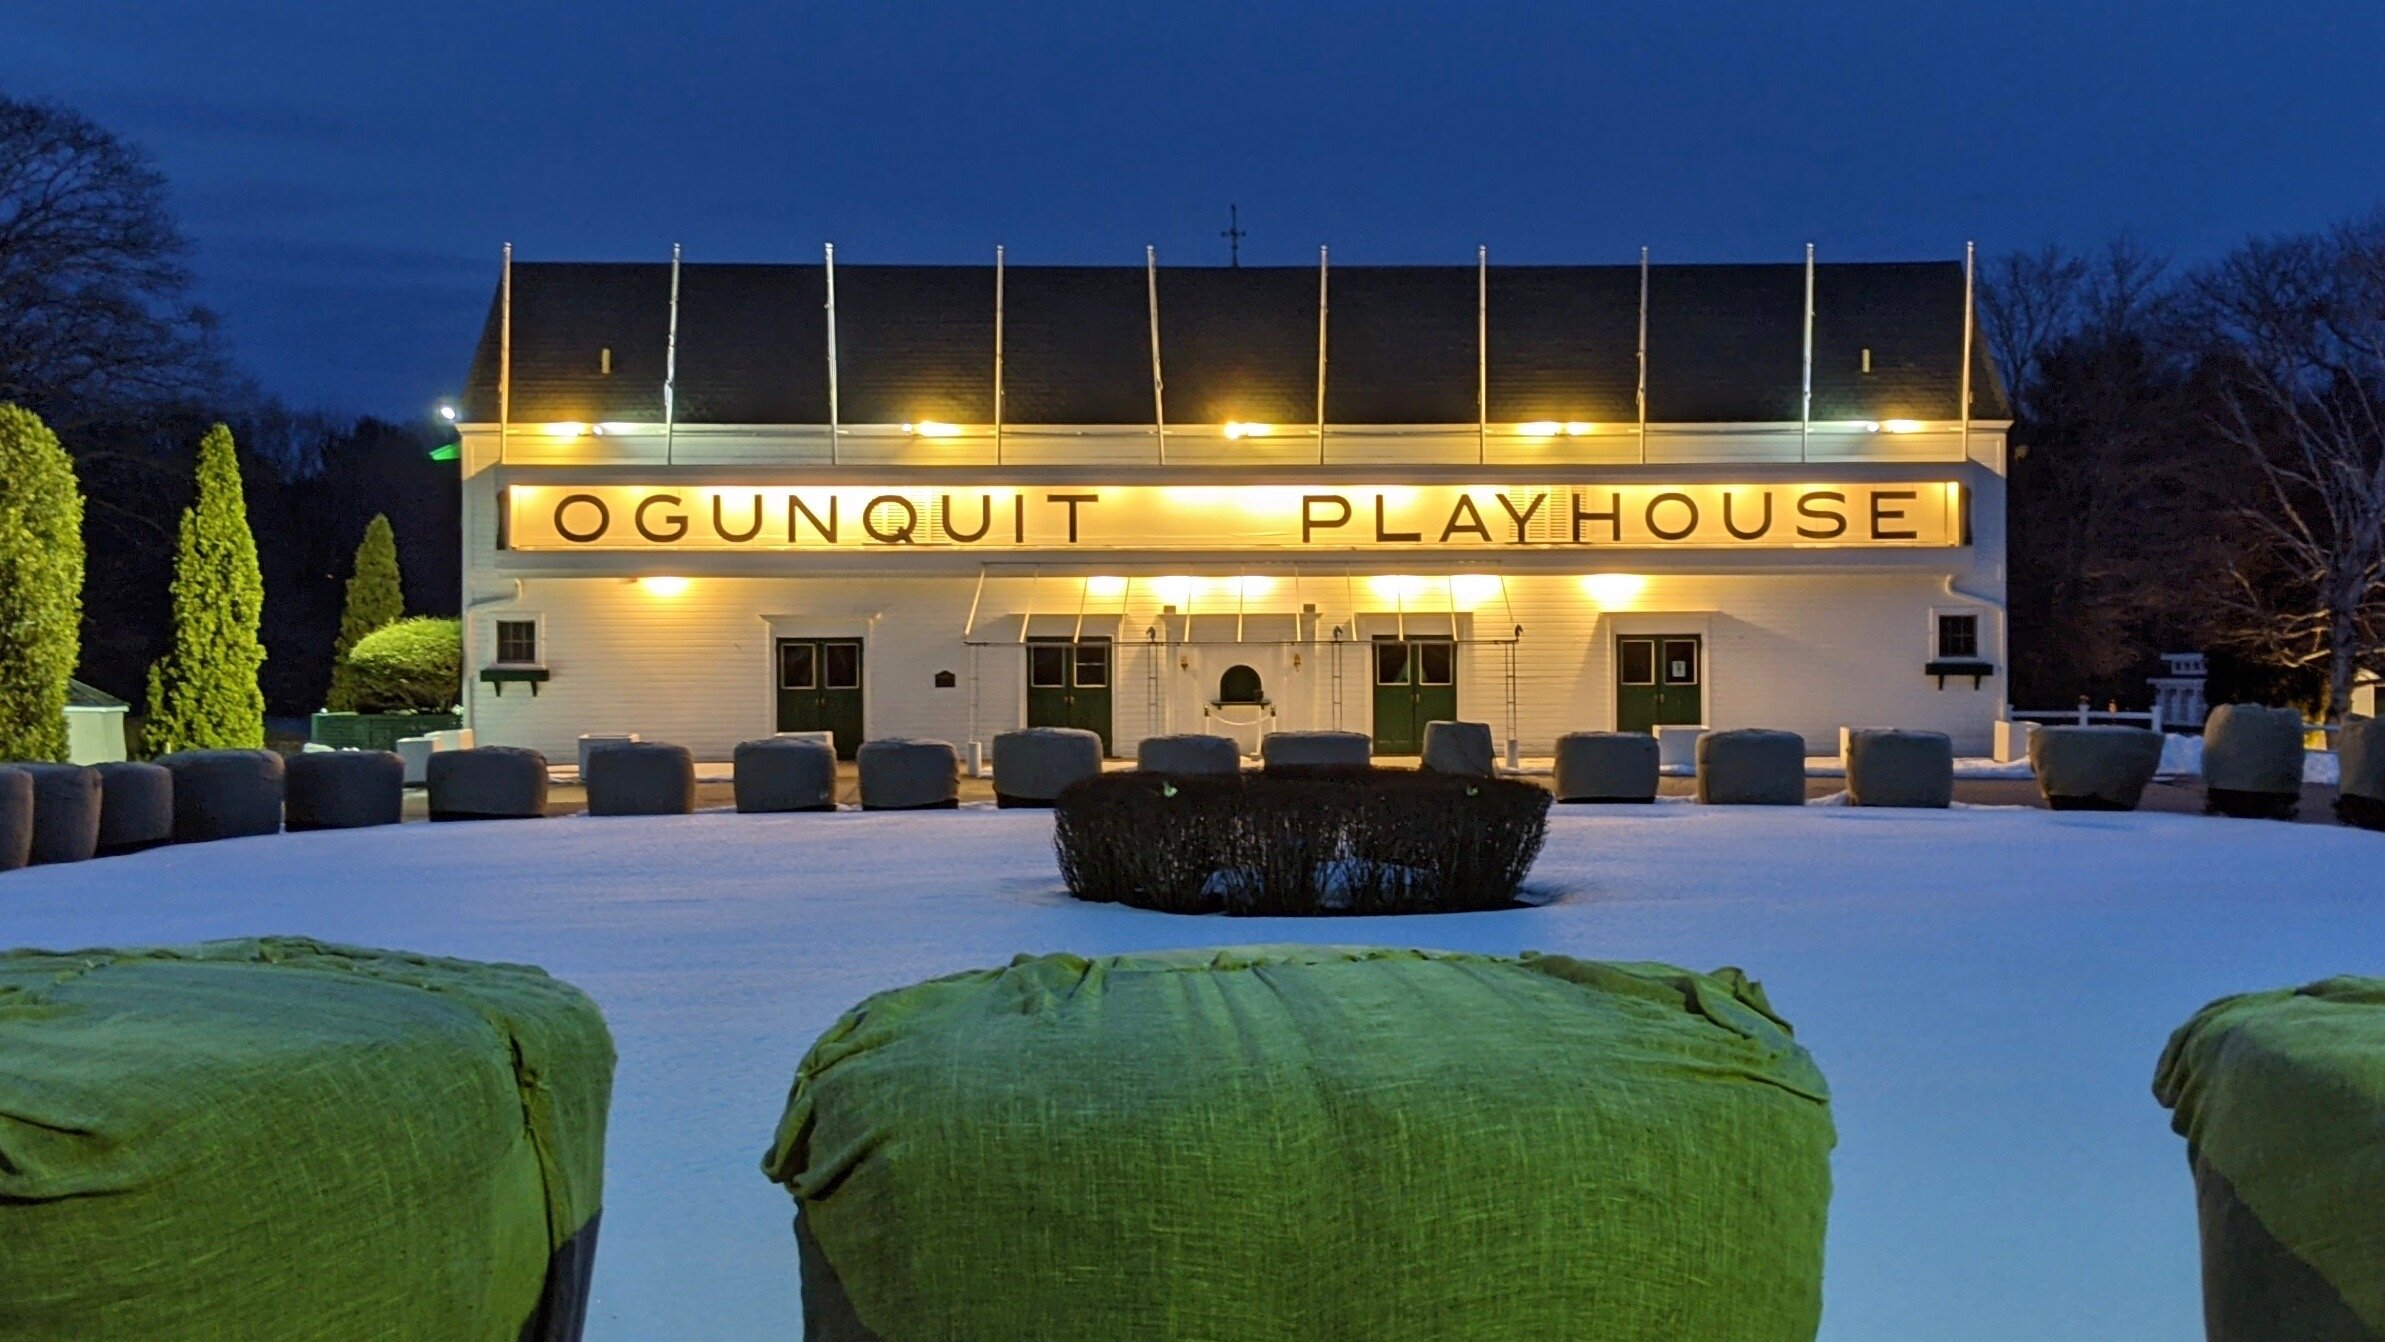 Ogunquit Playhouse Master Plan